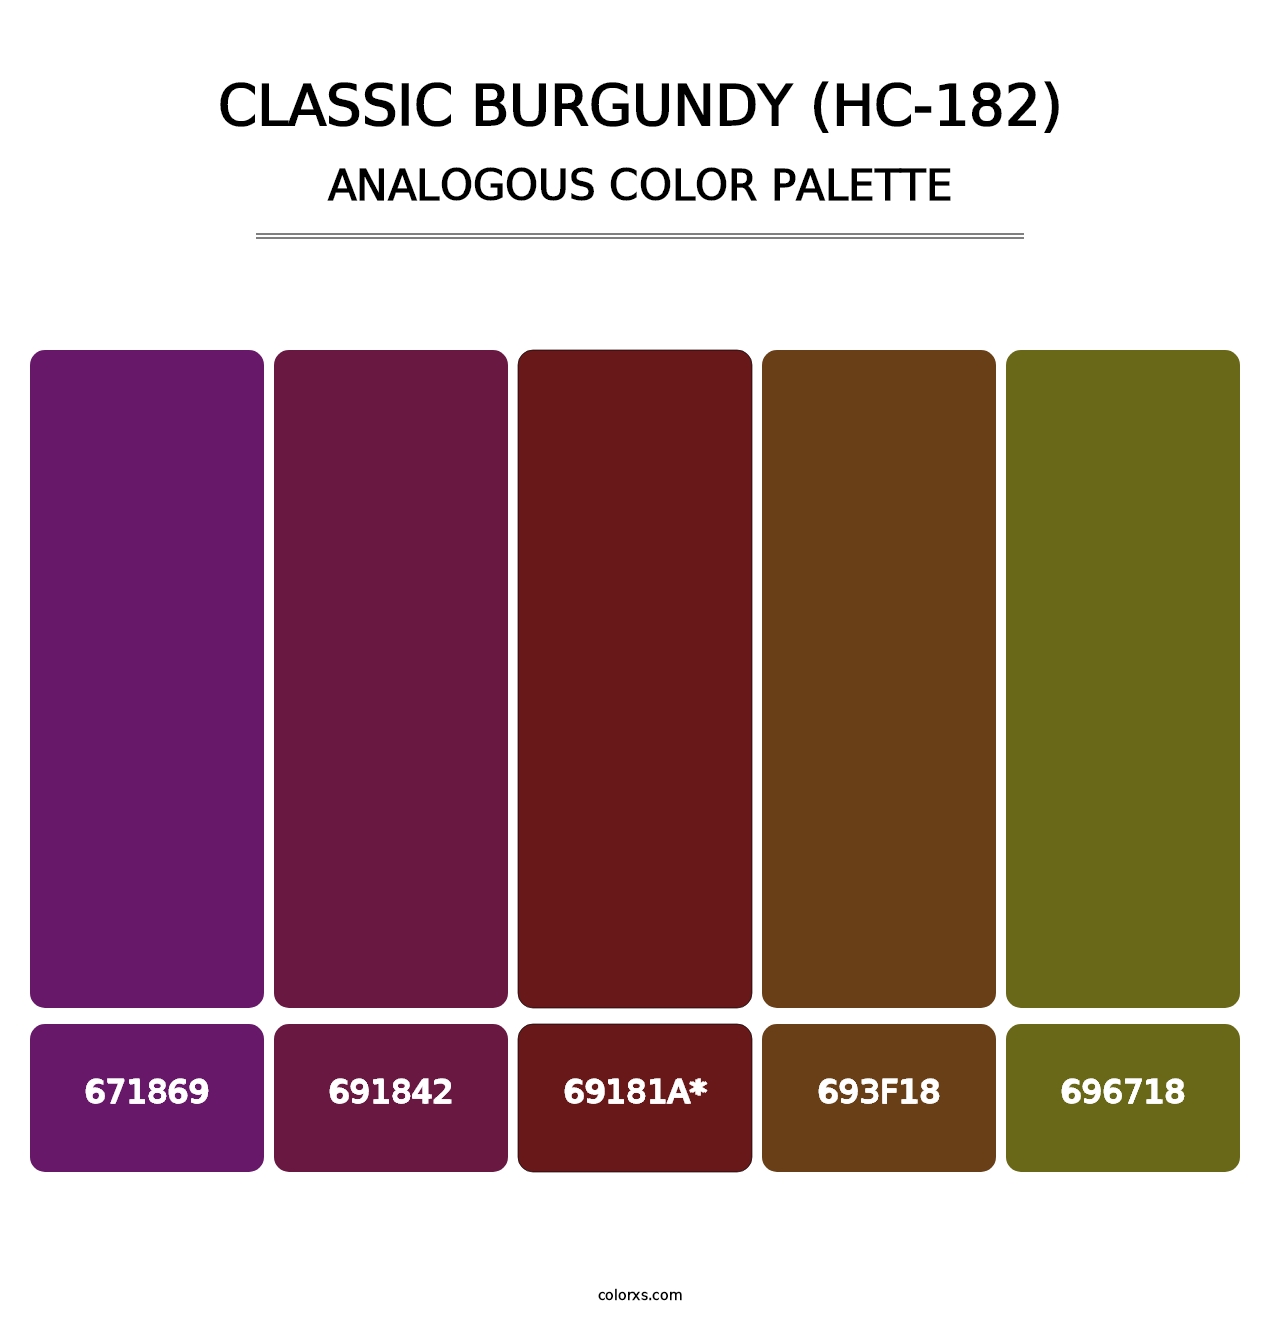 Classic Burgundy (HC-182) - Analogous Color Palette